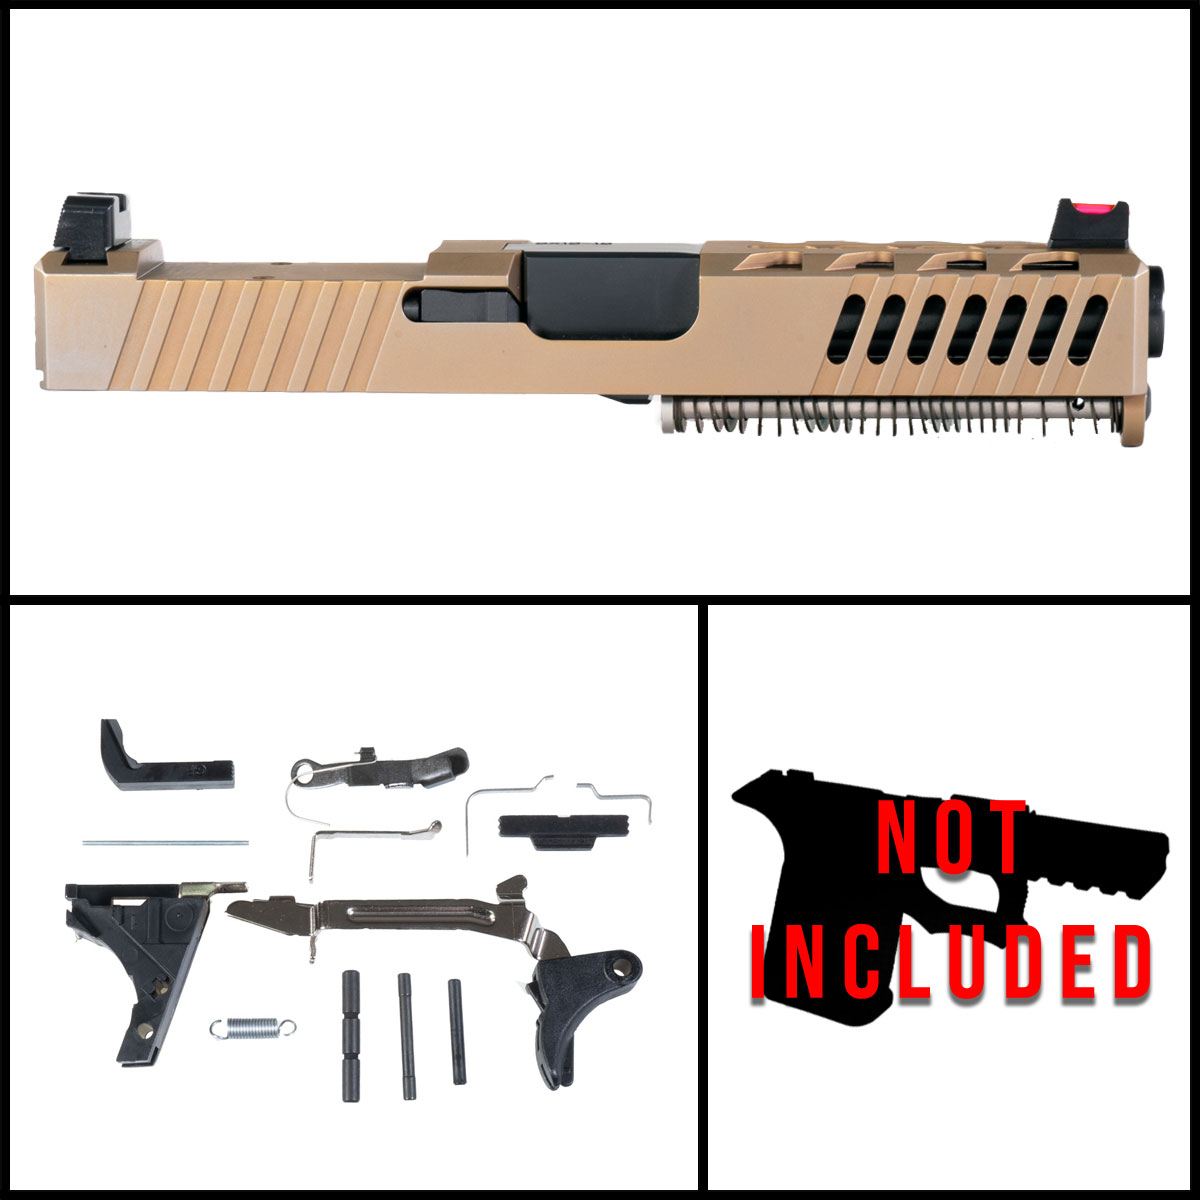 OTD '2833K' 9mm Full Pistol Build Kit (Everything Minus Frame) - Glock 19 Compatible